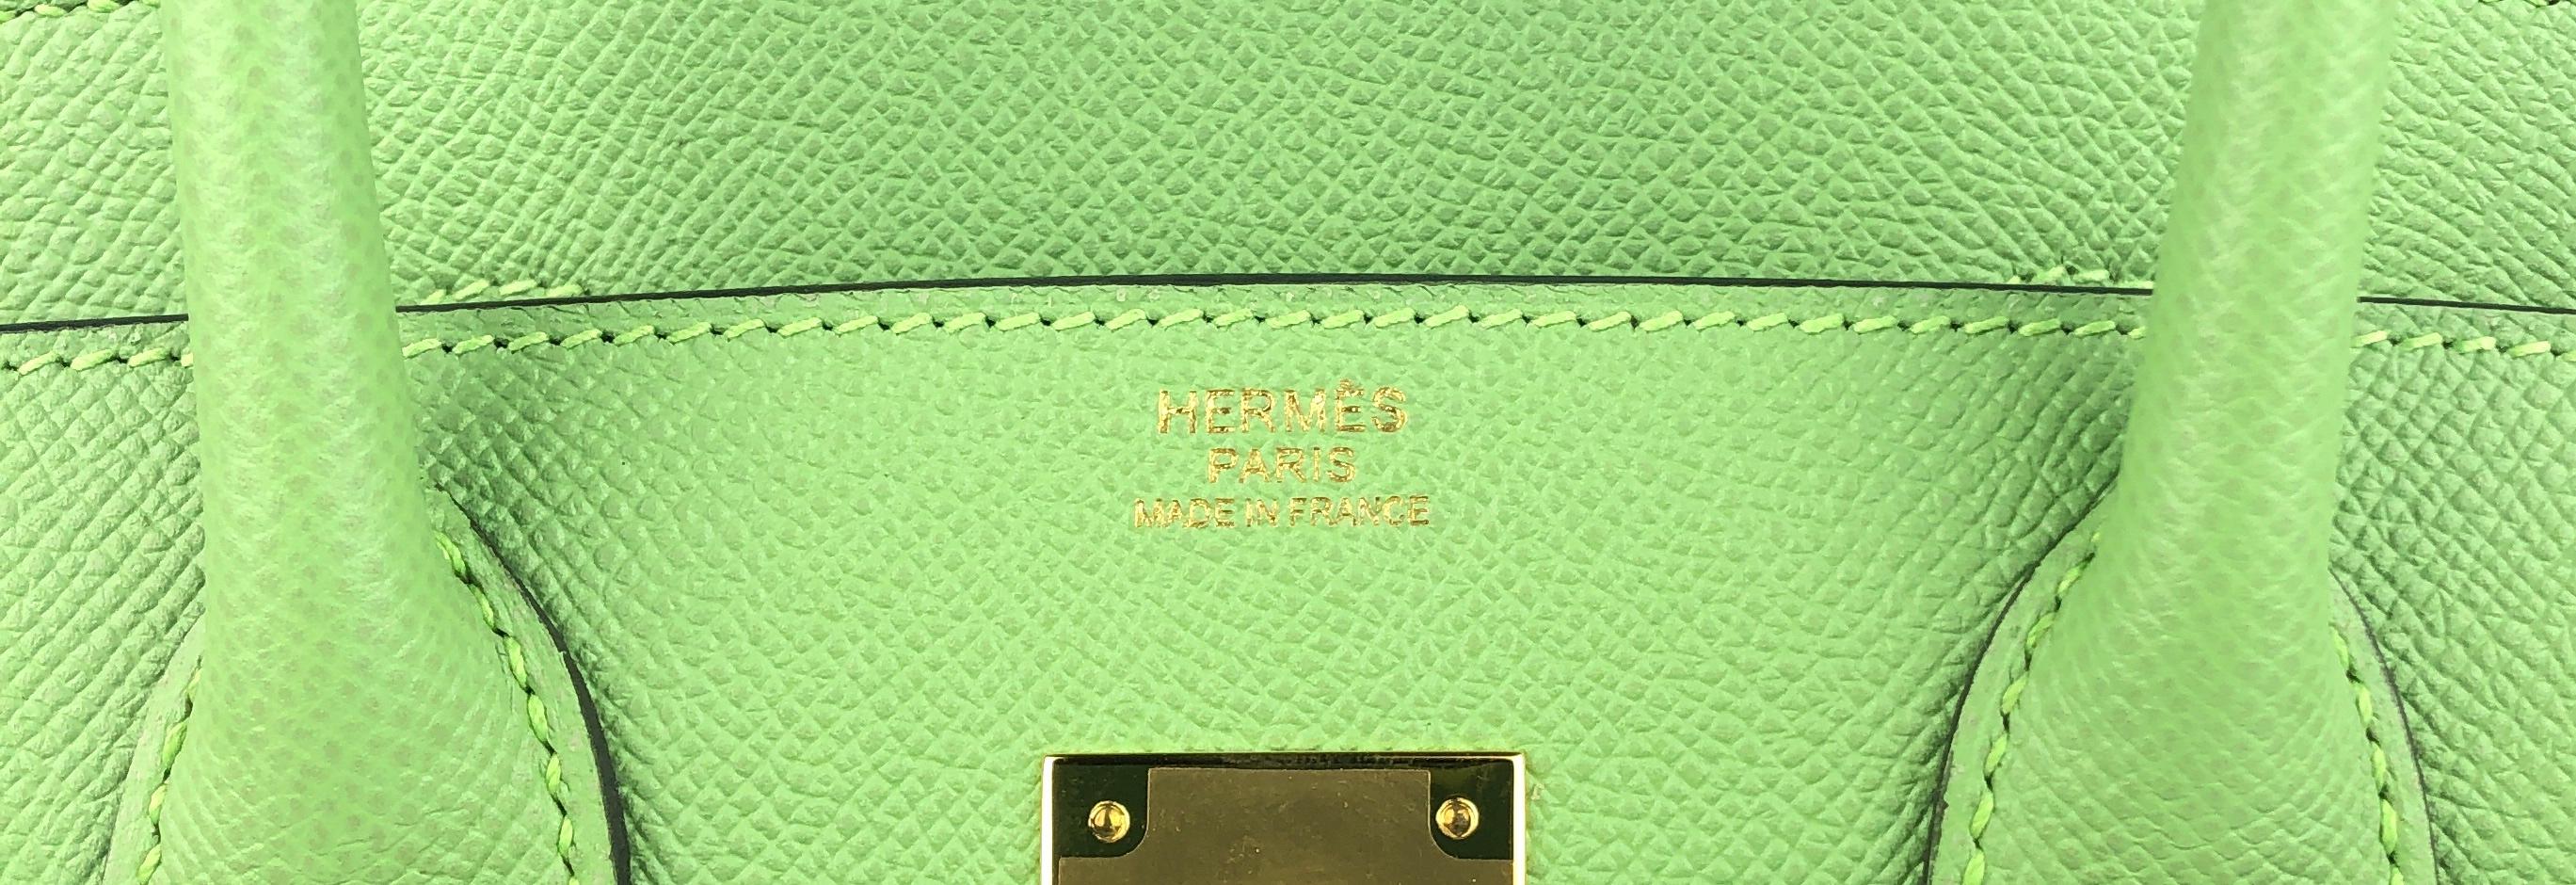 Women's or Men's Hermes Birkin 30 Vert Criquet Green Epsom Leather Handbag Gold Hardware 2020